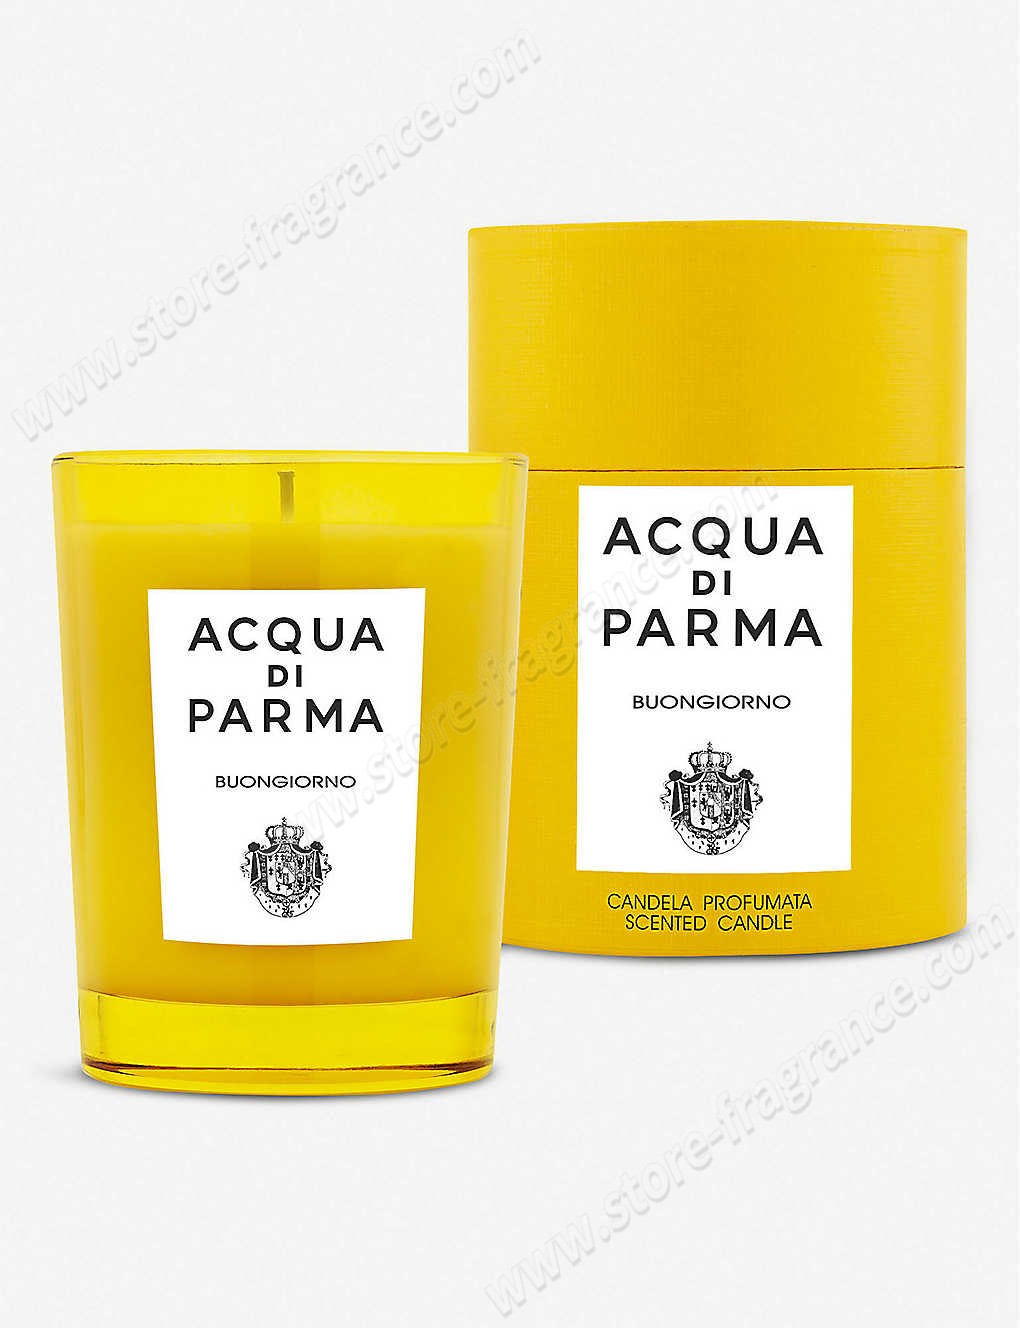 ACQUA DI PARMA/Buongiorno candle 200g ✿ Discount Store - -1